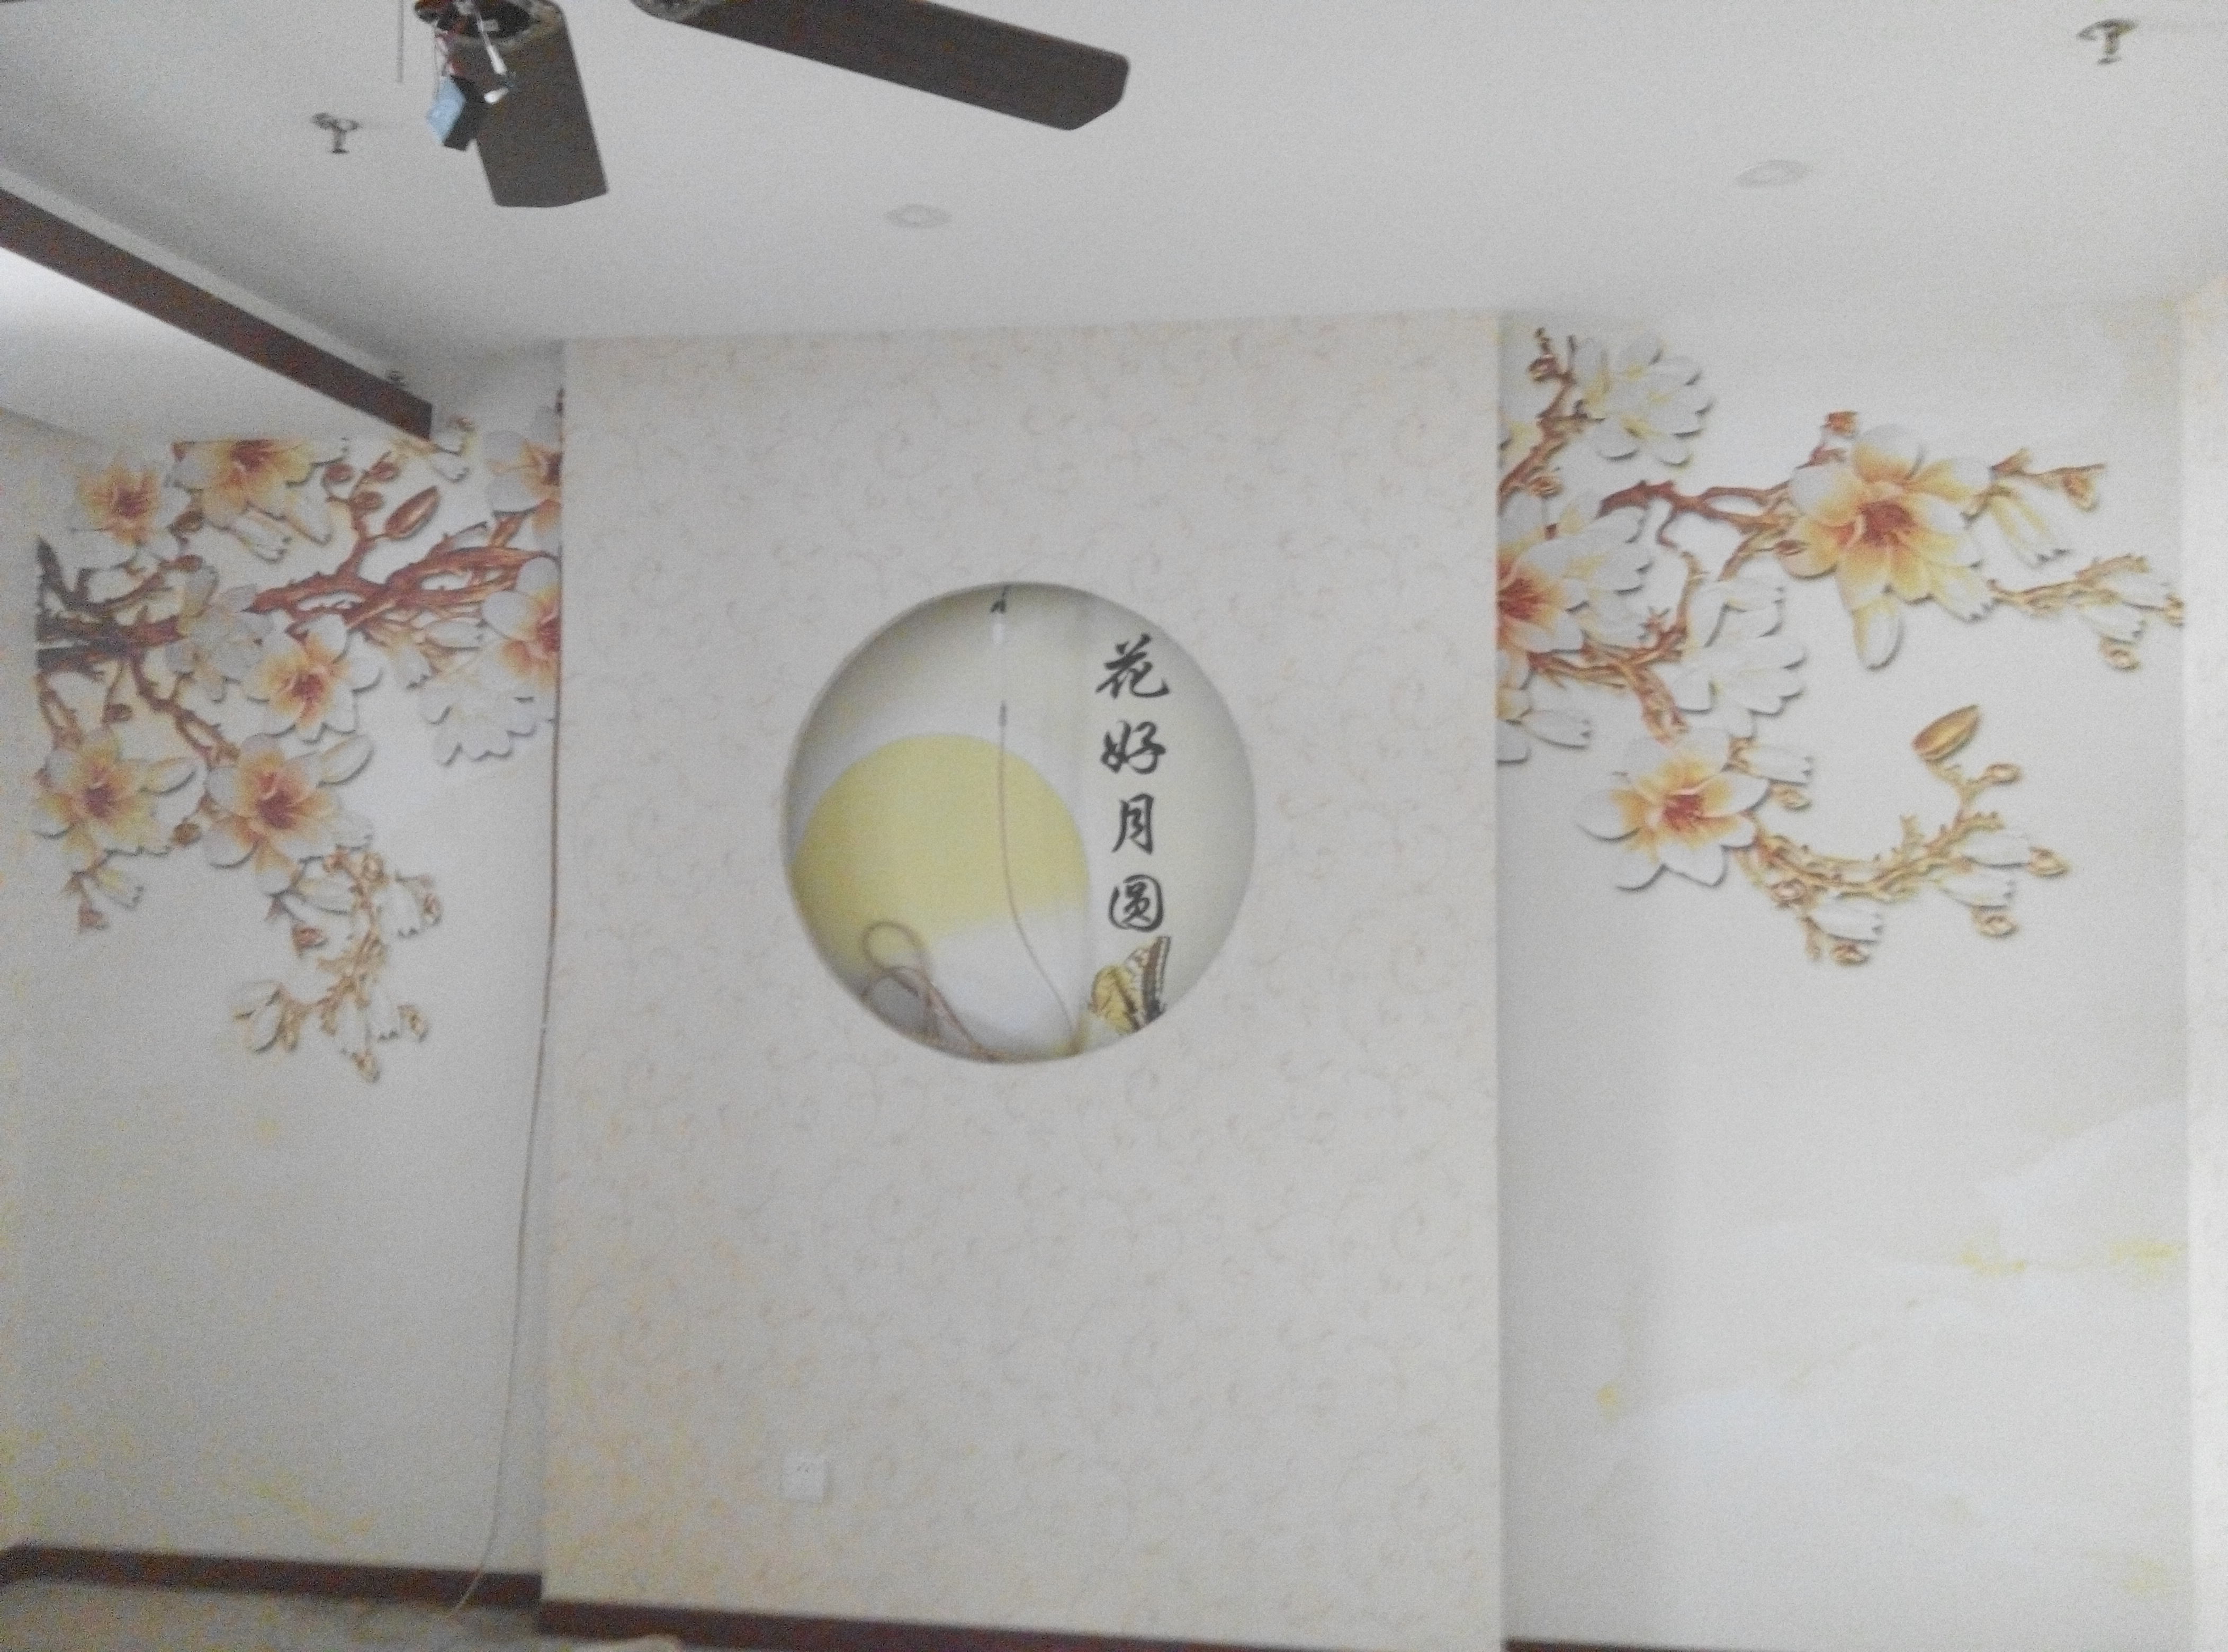 简约 混搭 旧房改造 餐厅图片来自北京洲滨软包墙纸销售在安华西里饭店的分享